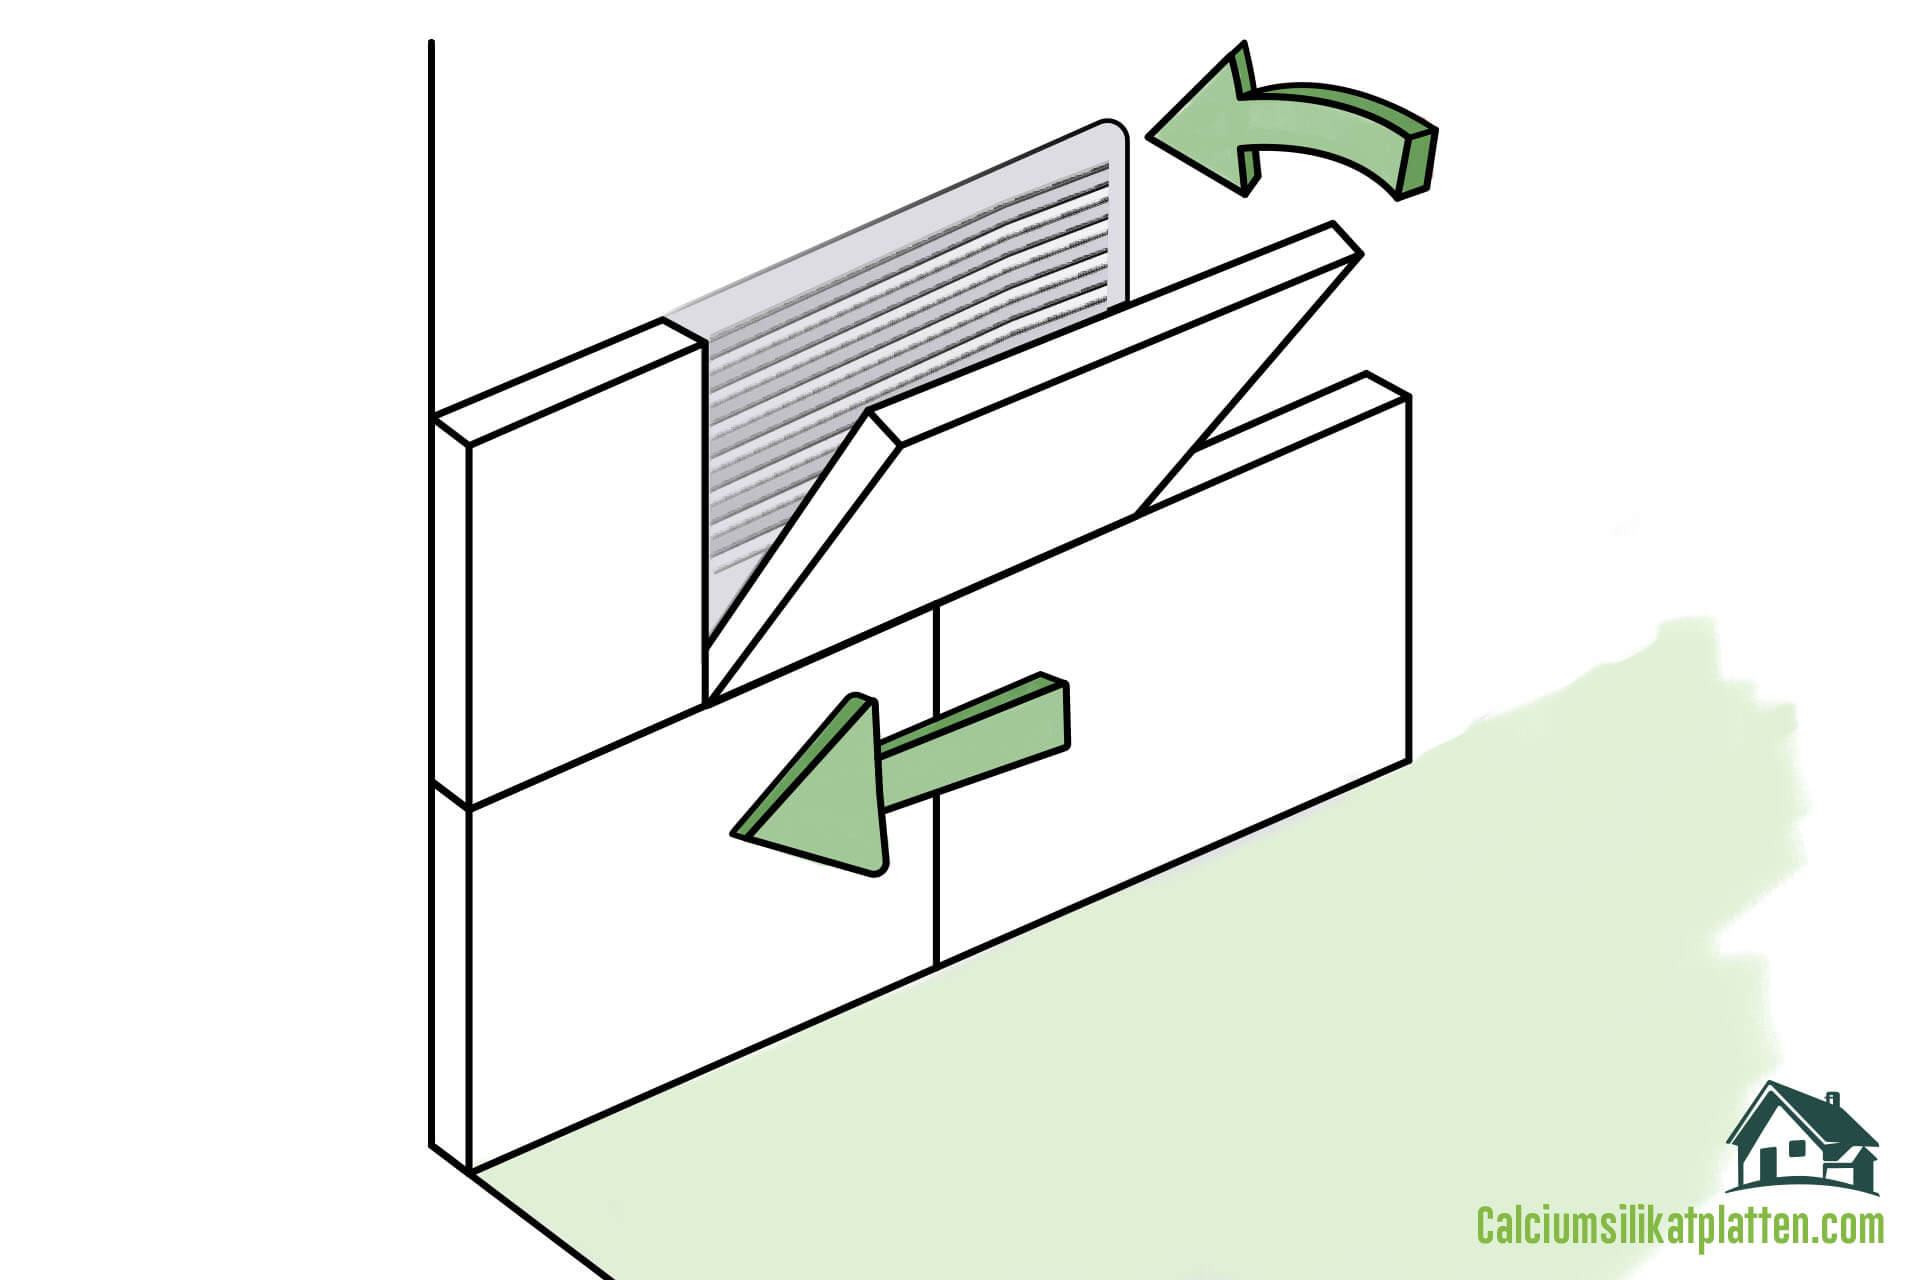 Anleitung zur Verarbeitung von Calciumsilikatplatten: Anbringen der Calciumsilikatplatte an die Wand